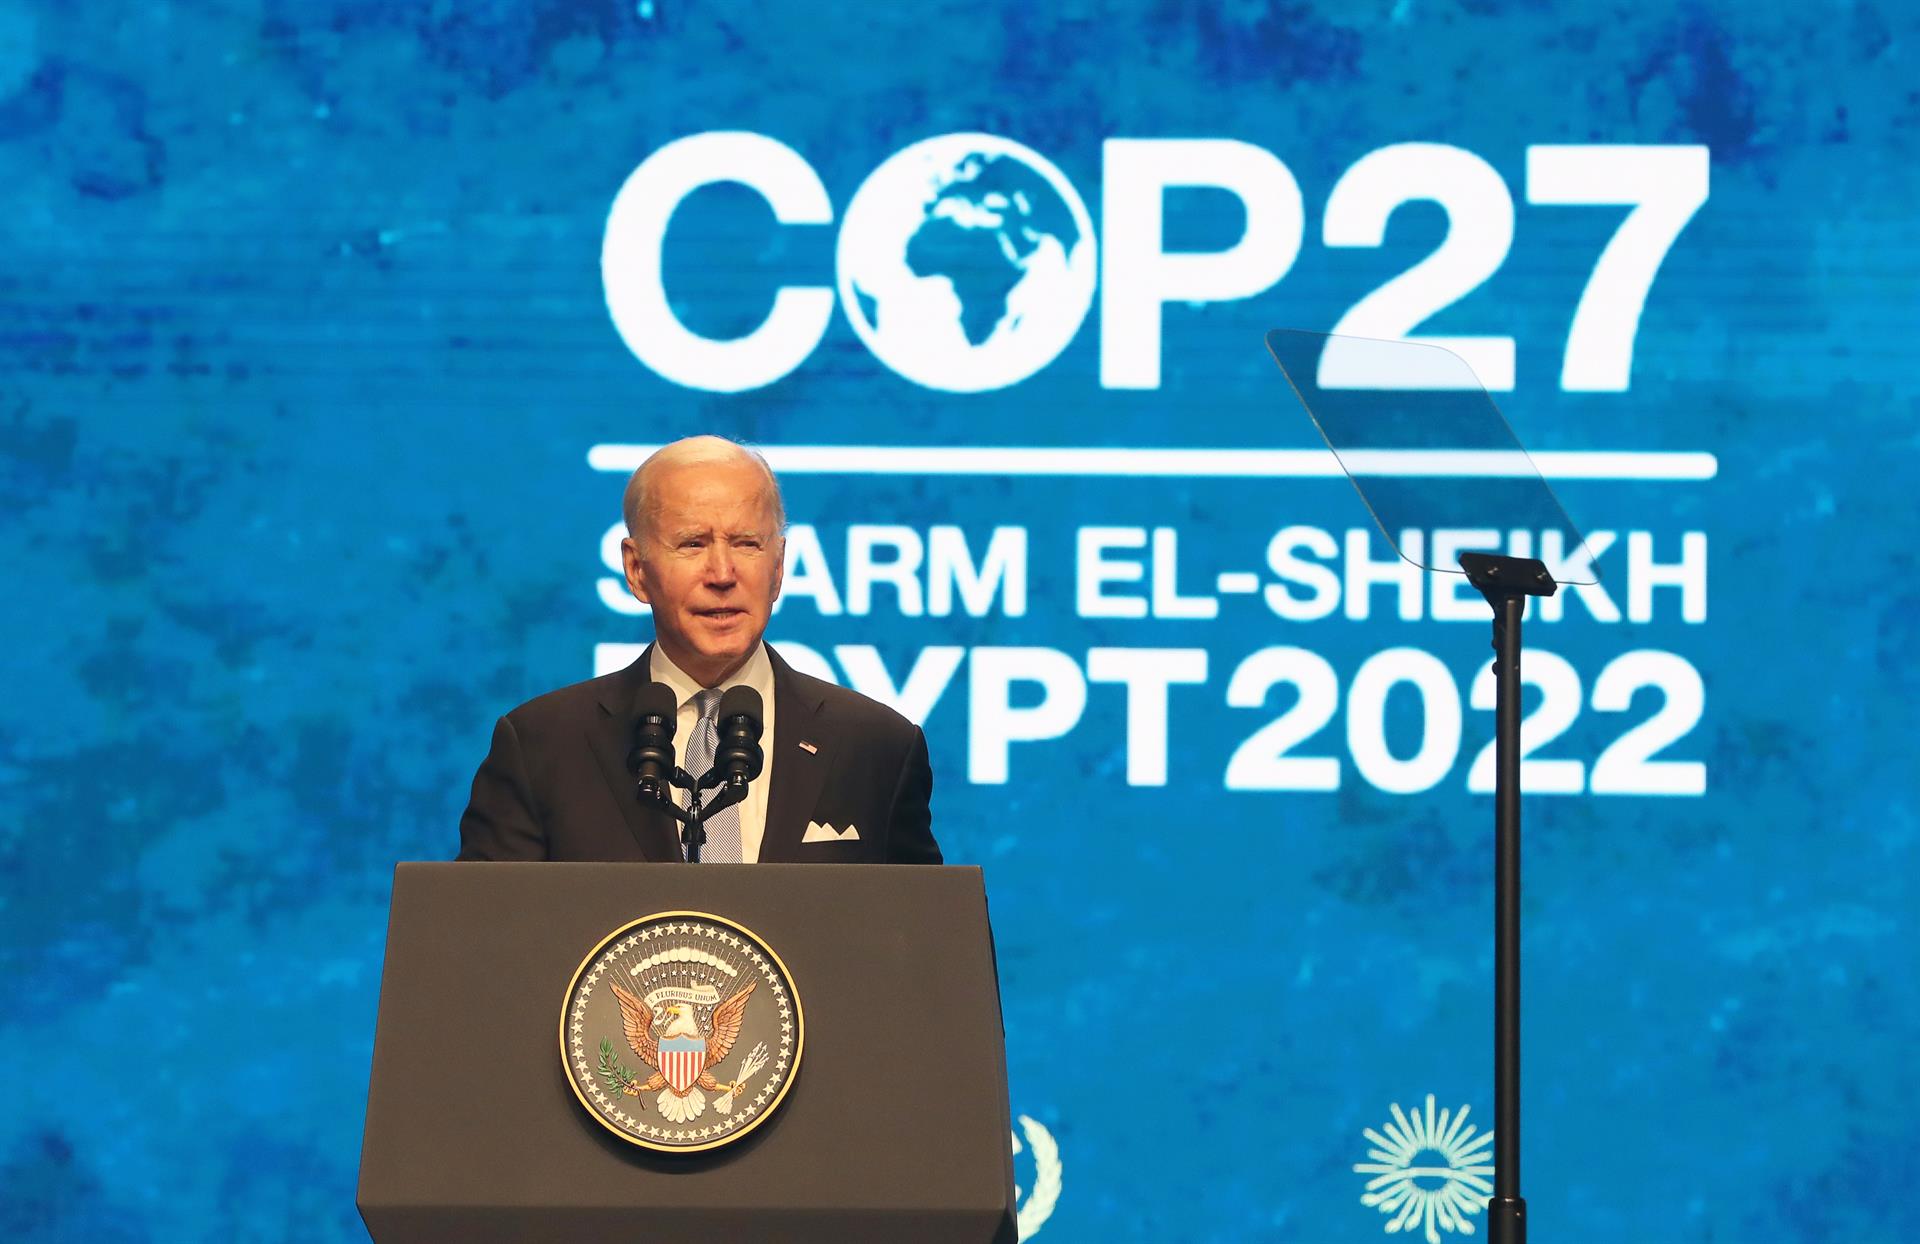 Stany Zjednoczone działają przeciwko zmianom klimatu, wszyscy muszą działać: Biden